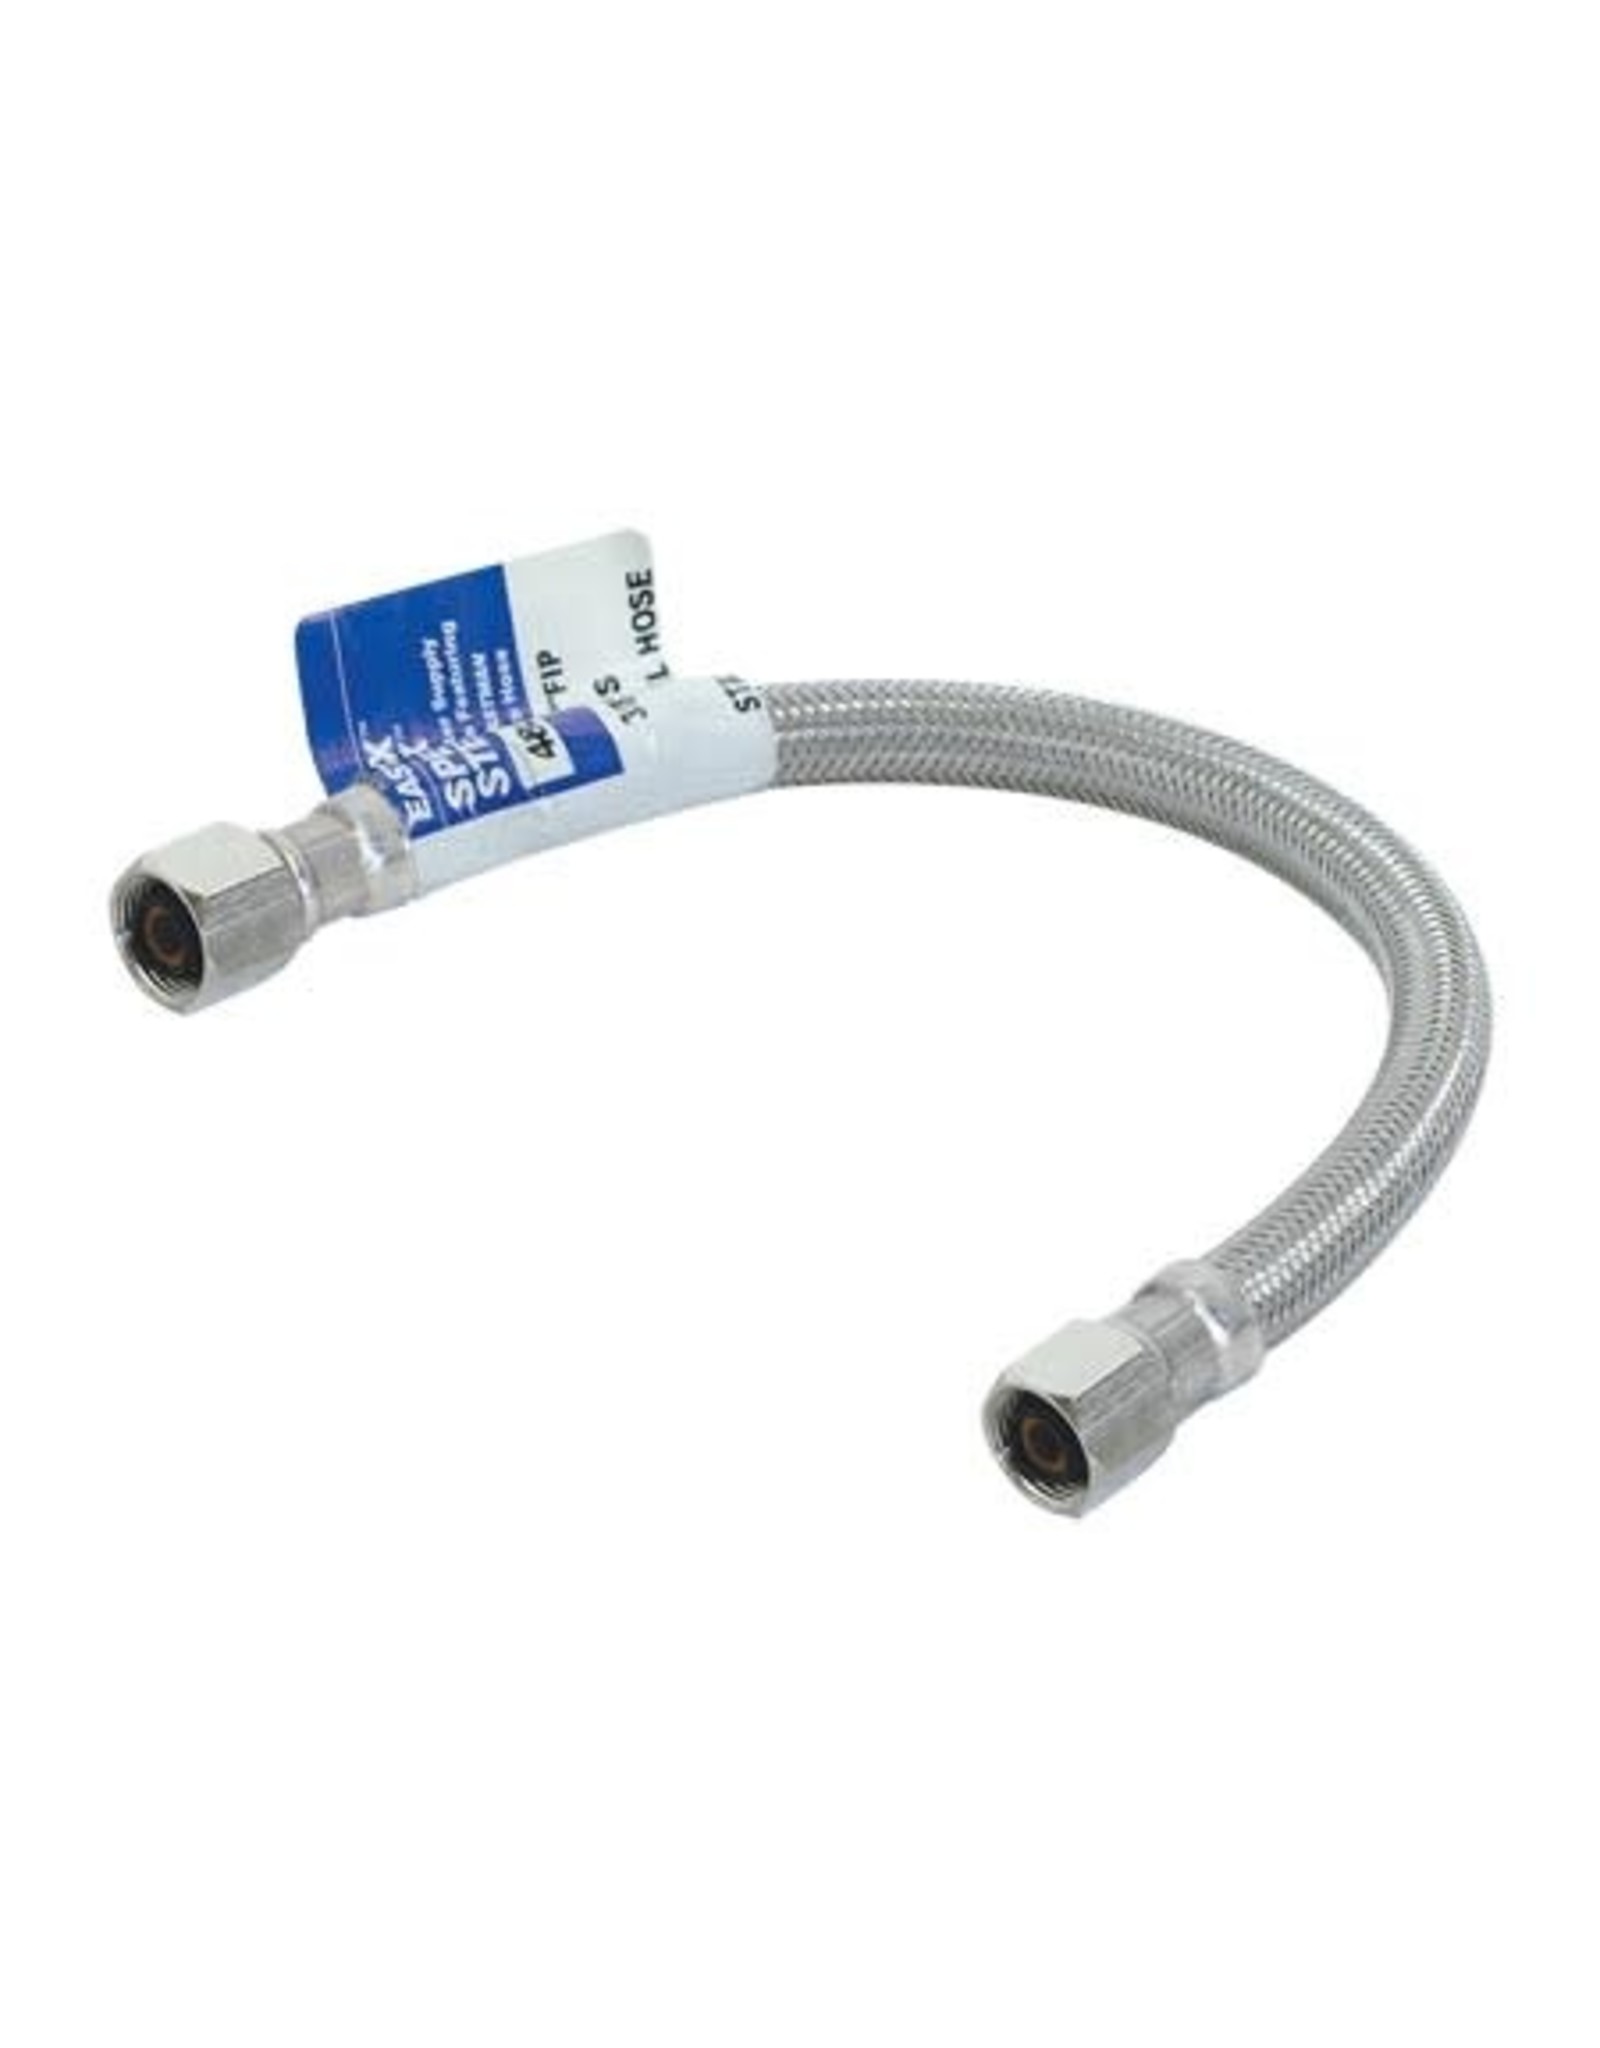 Faucet Connector 3/8" Comp x 3/8" Comp x 30" Length